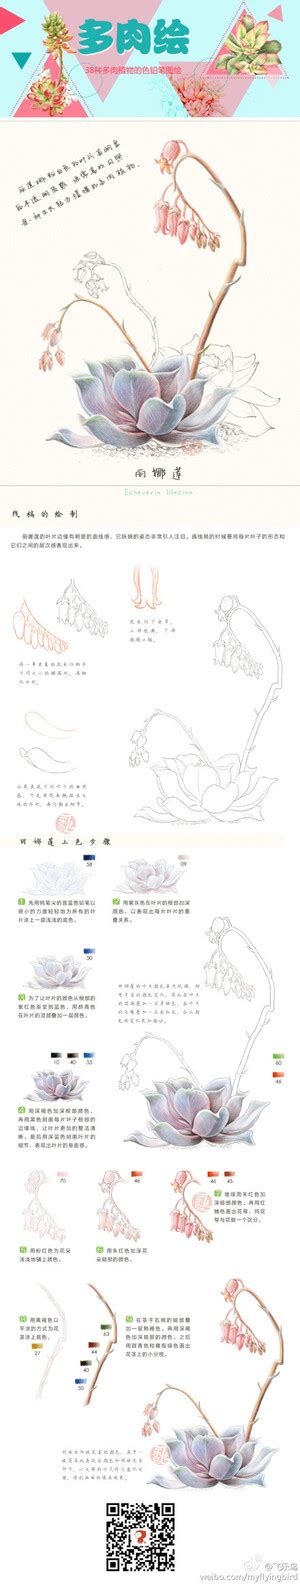 飞乐鸟绘画……_来自小太阳924的图片分享-堆糖 | Flower drawing, Color pencil drawing, Color ...